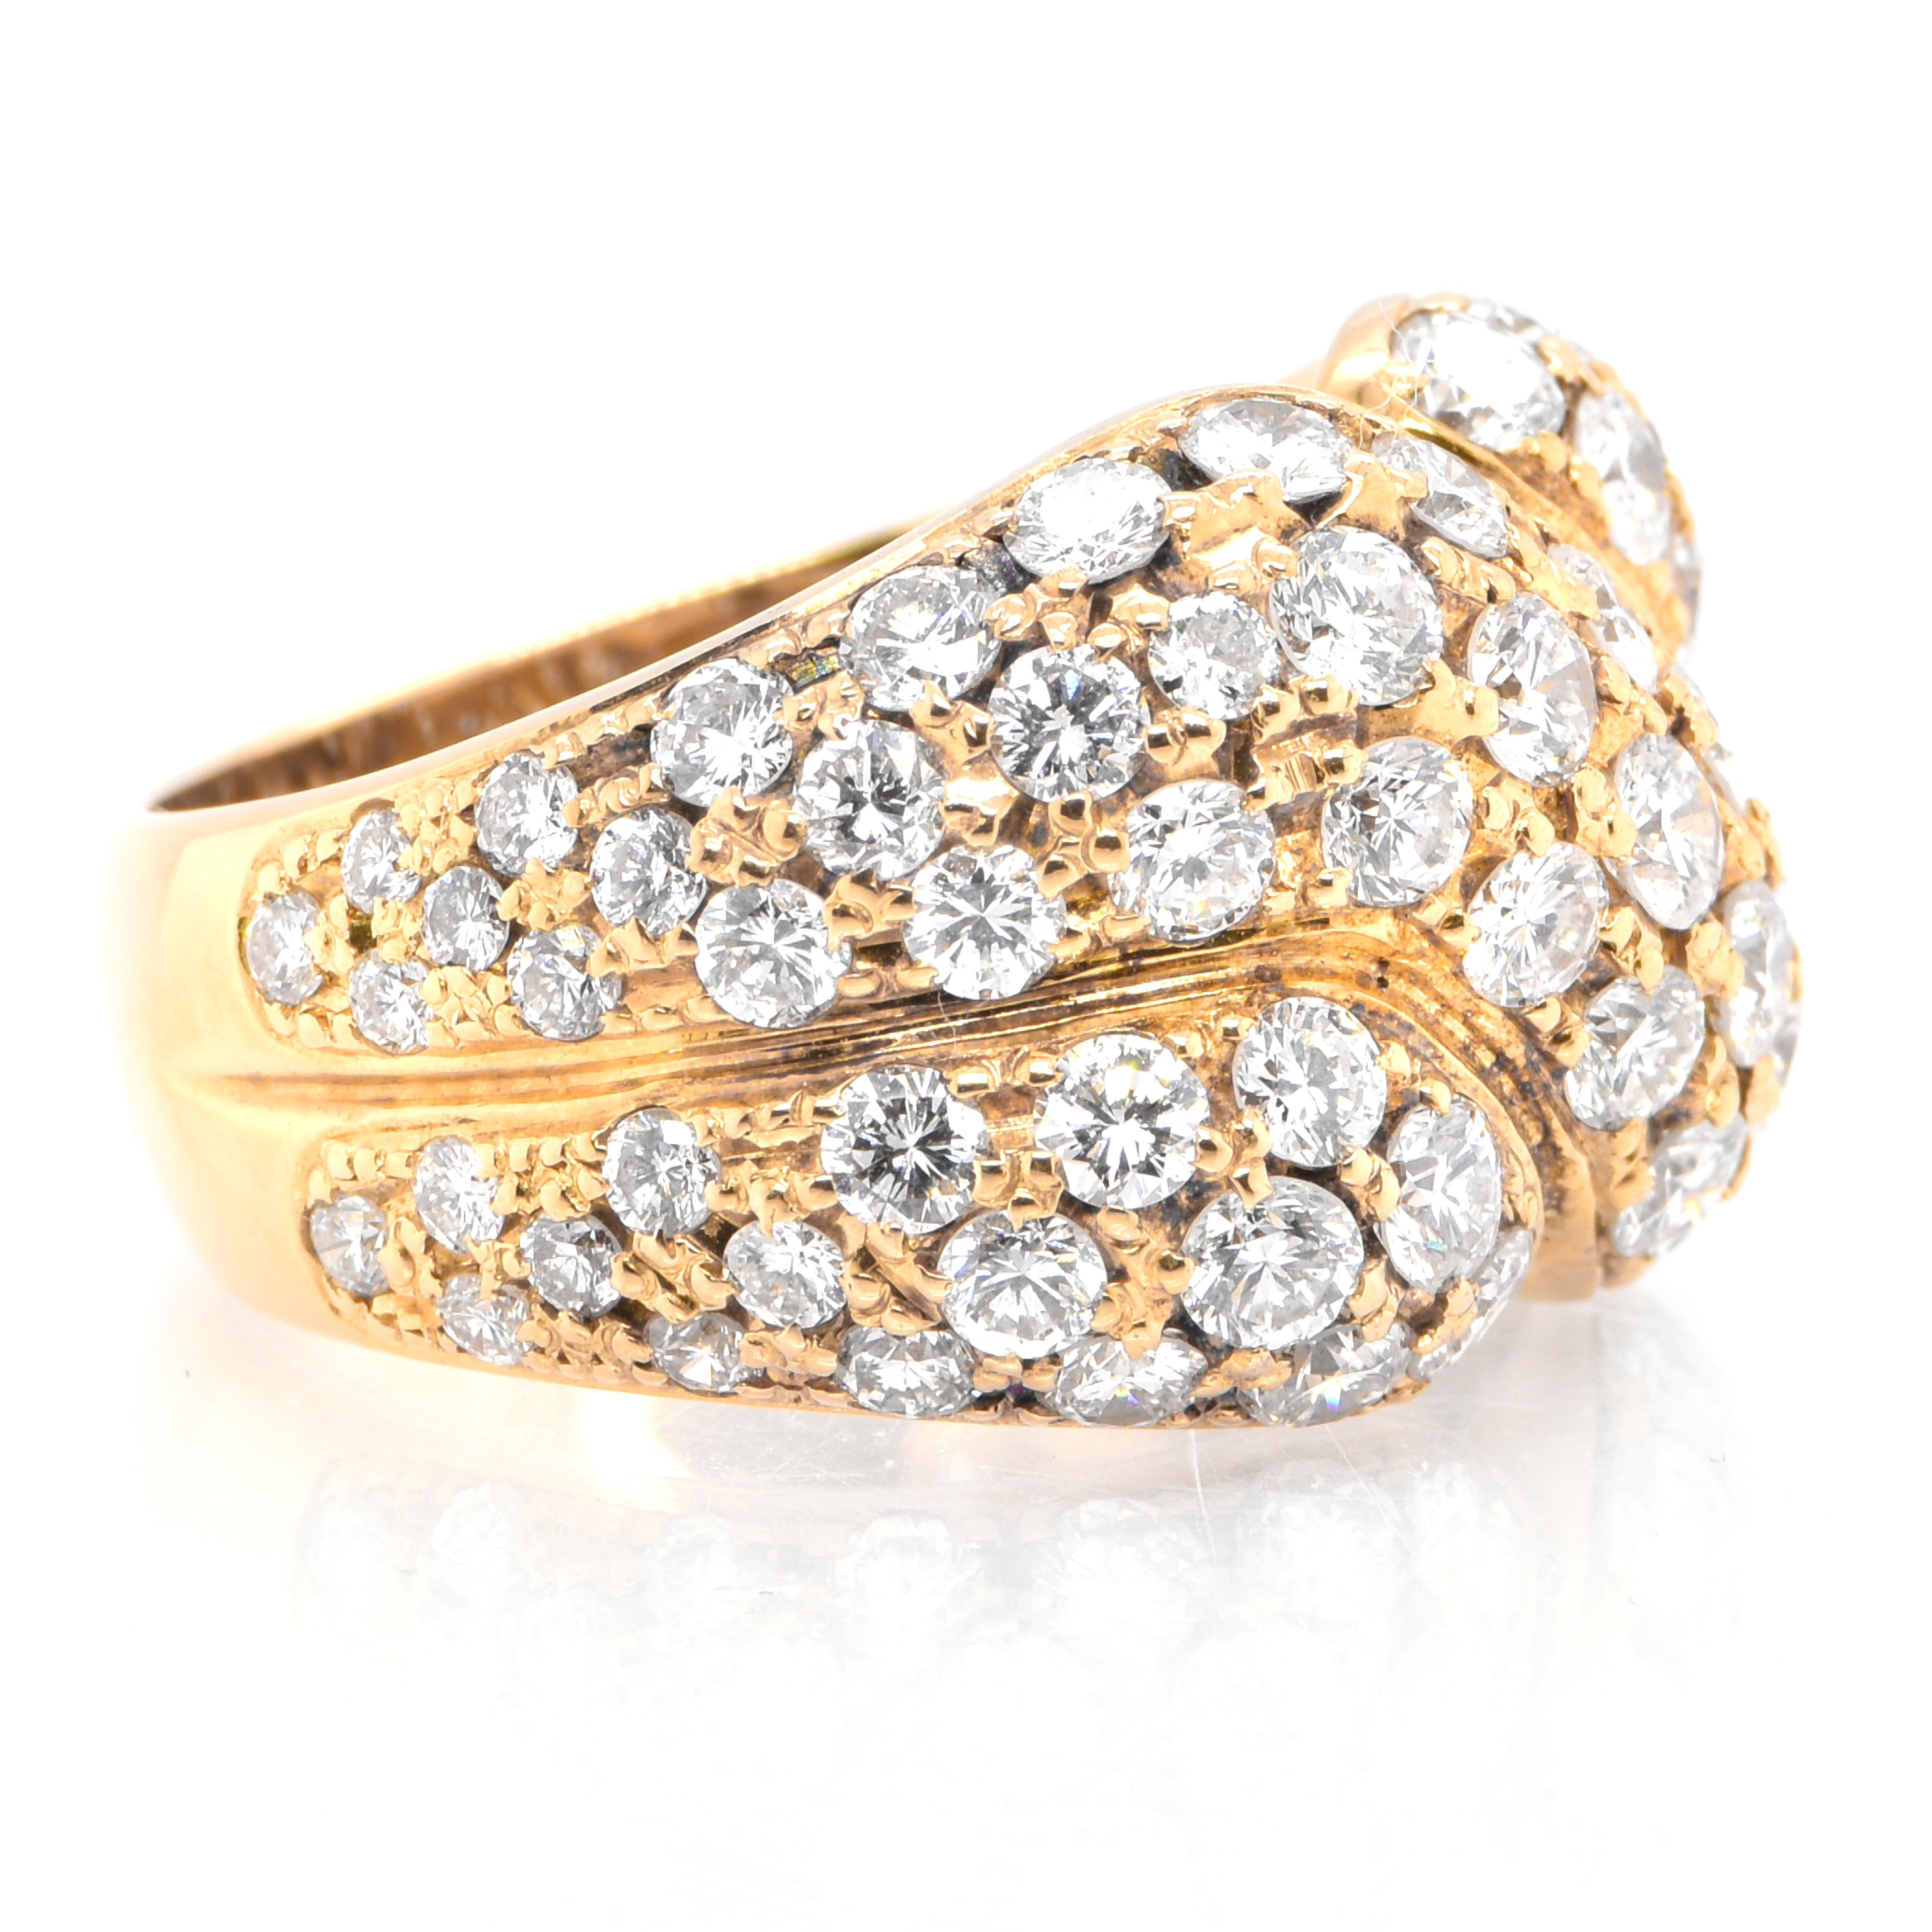 Modern 3.20 Carats Diamond Cluster Ring Set in 18 Karat Yellow Gold